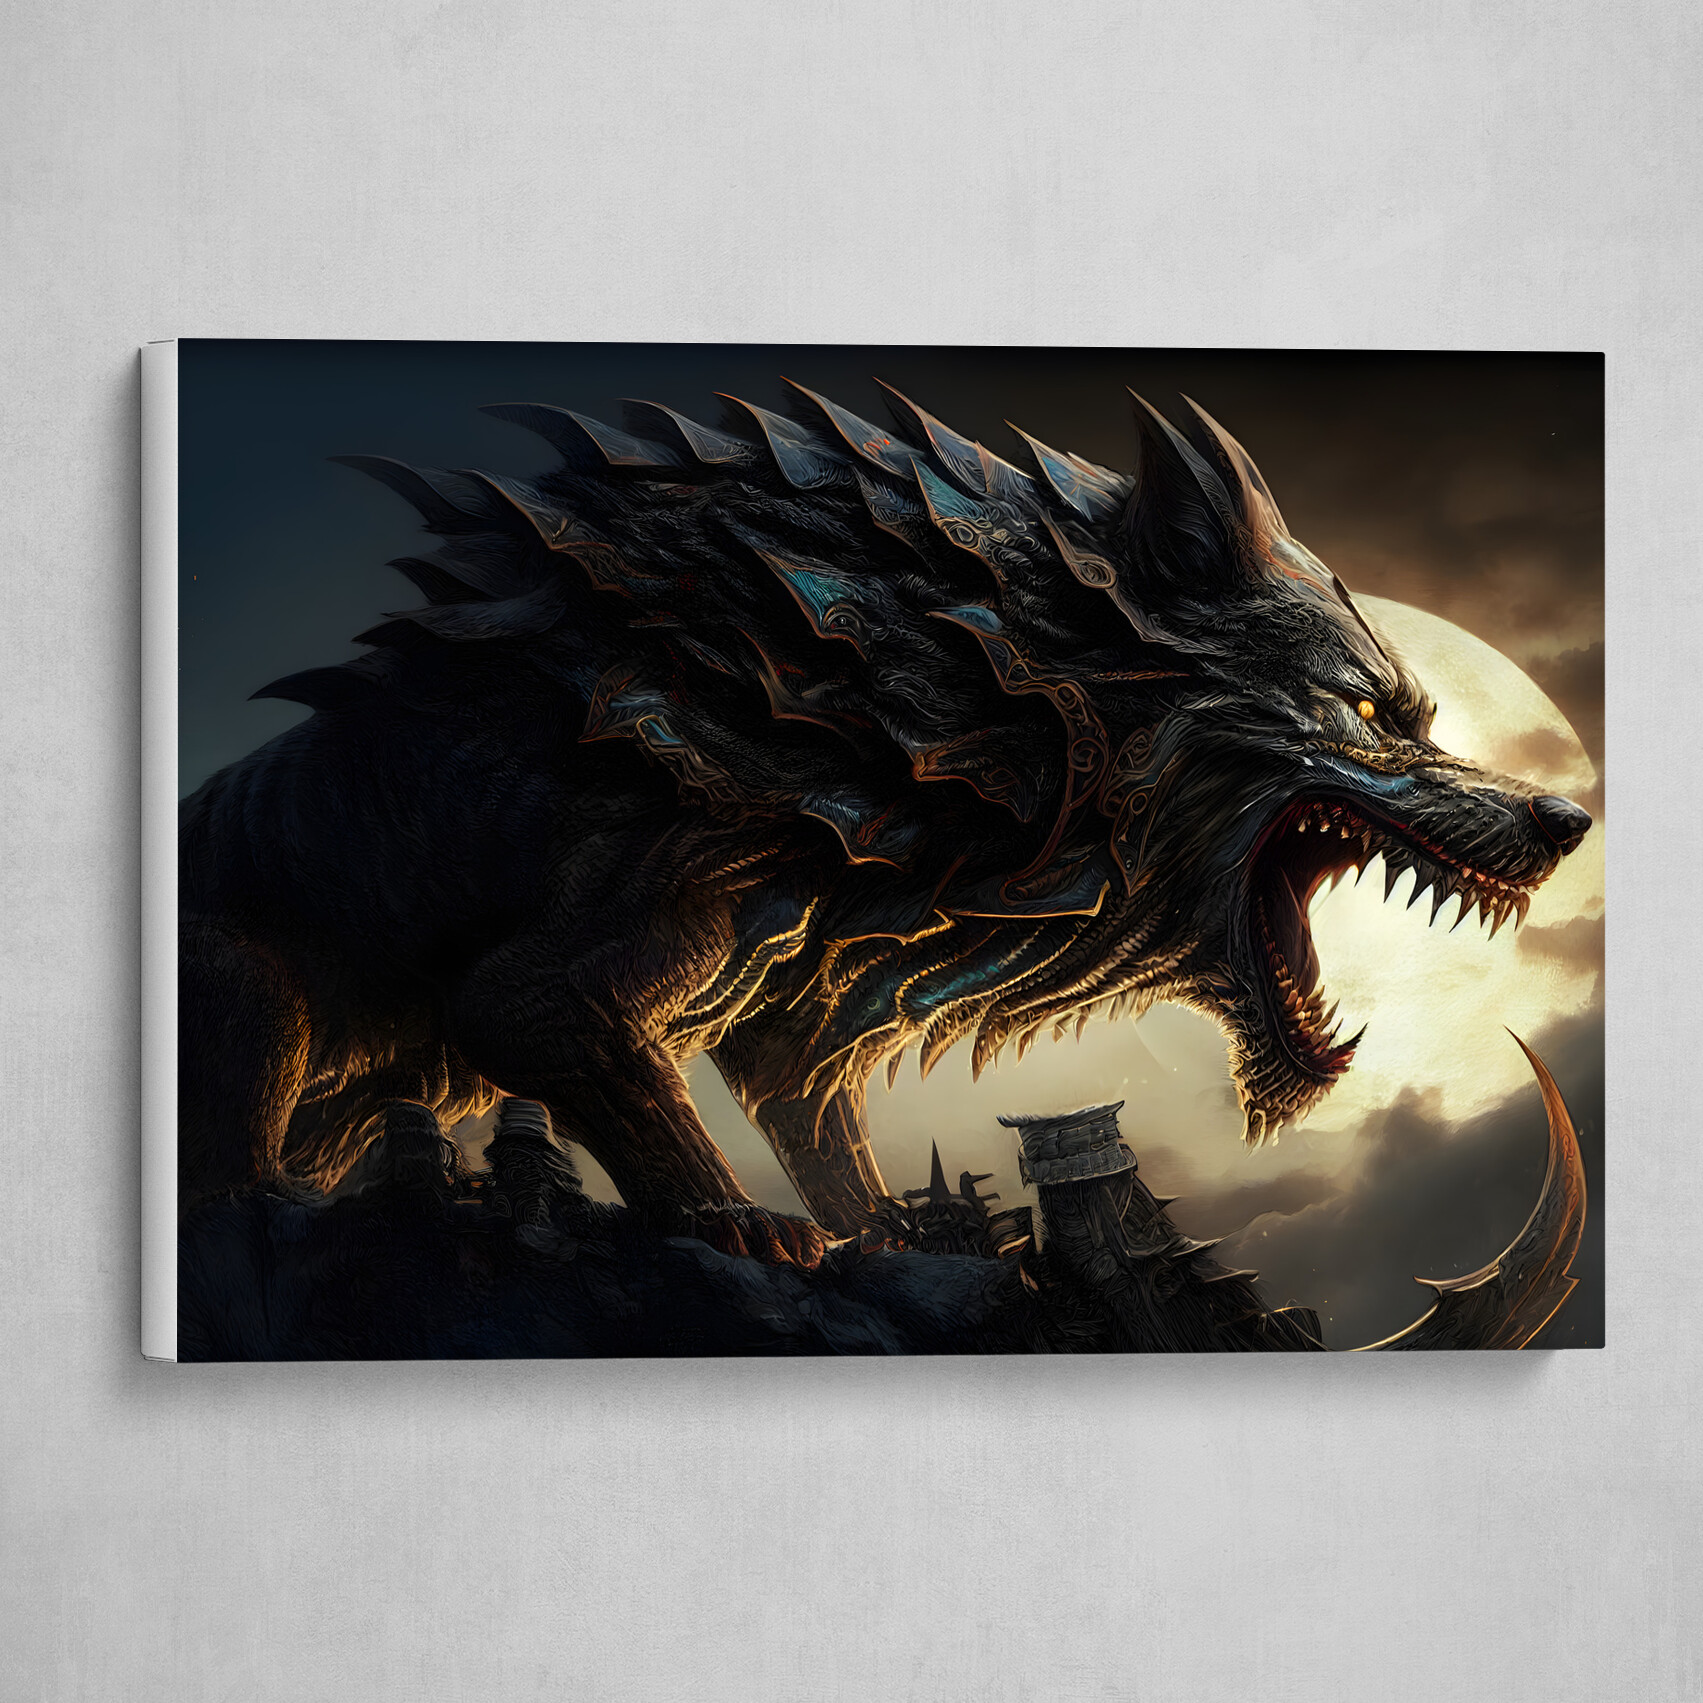 Fenrir the Gigantic Ferocious Wolf of Norse Mythology